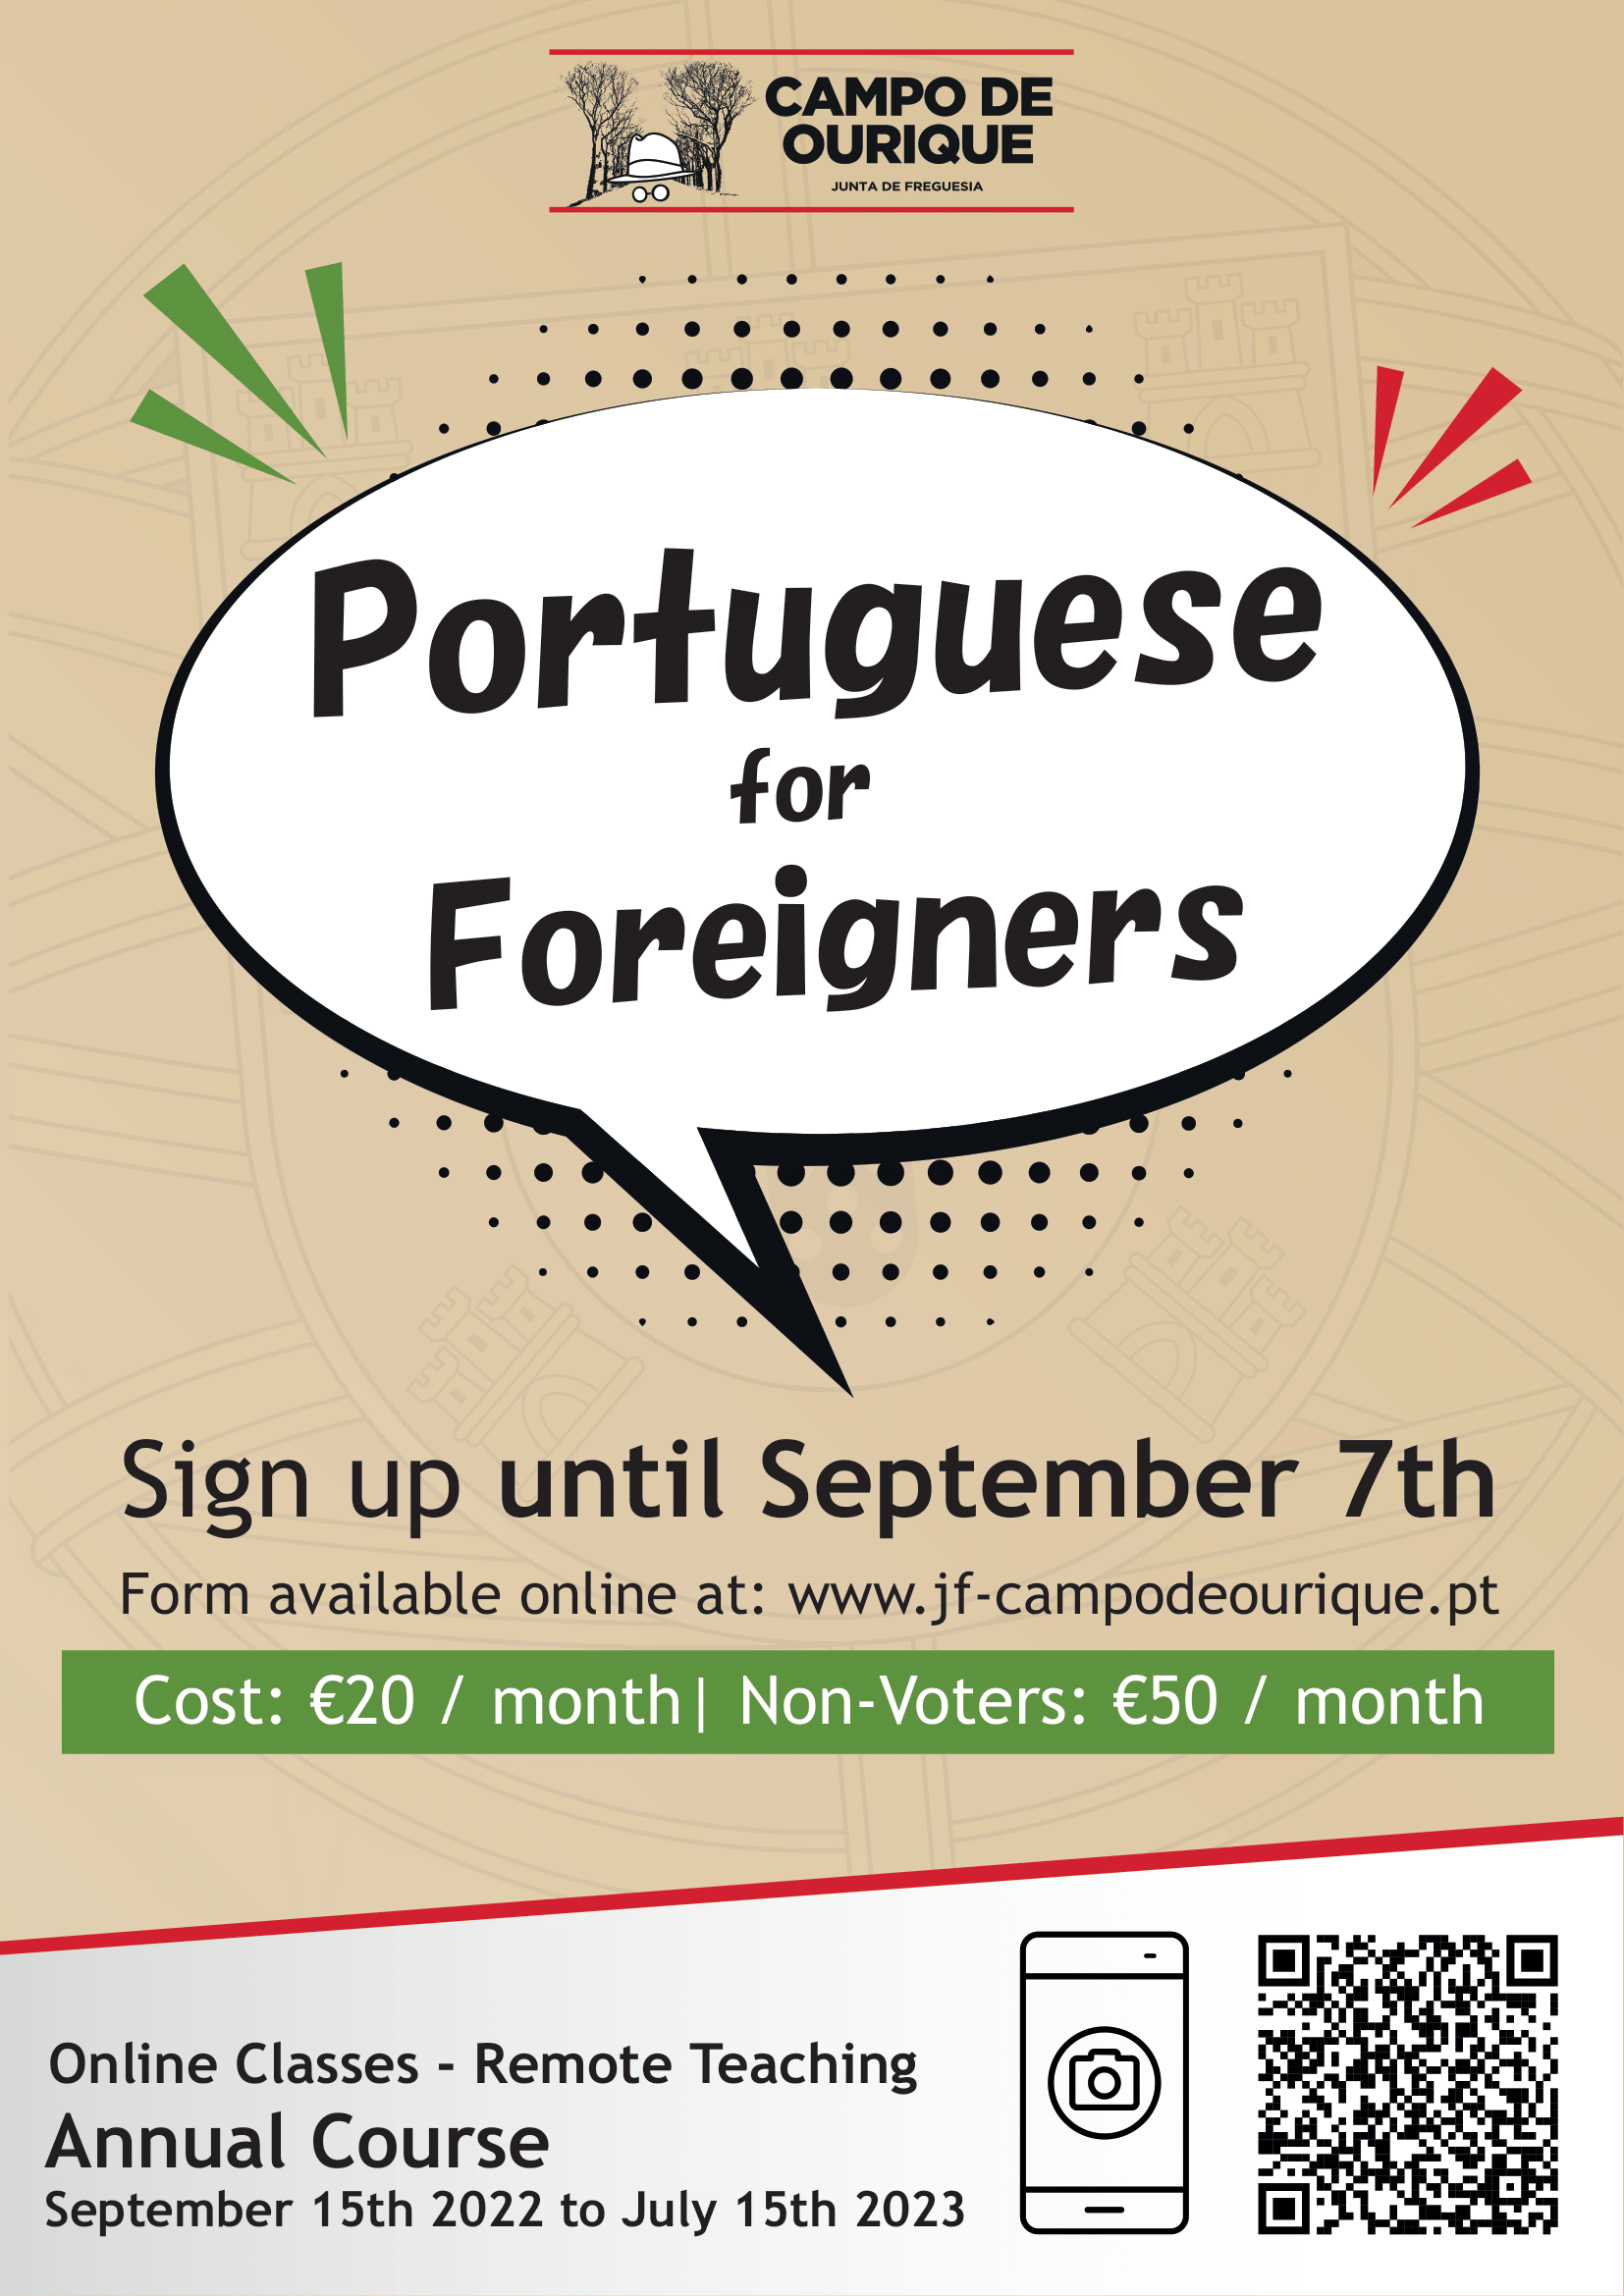 AULA 2 - Curso de Português para Estrangeiros - DAINT/UERN 